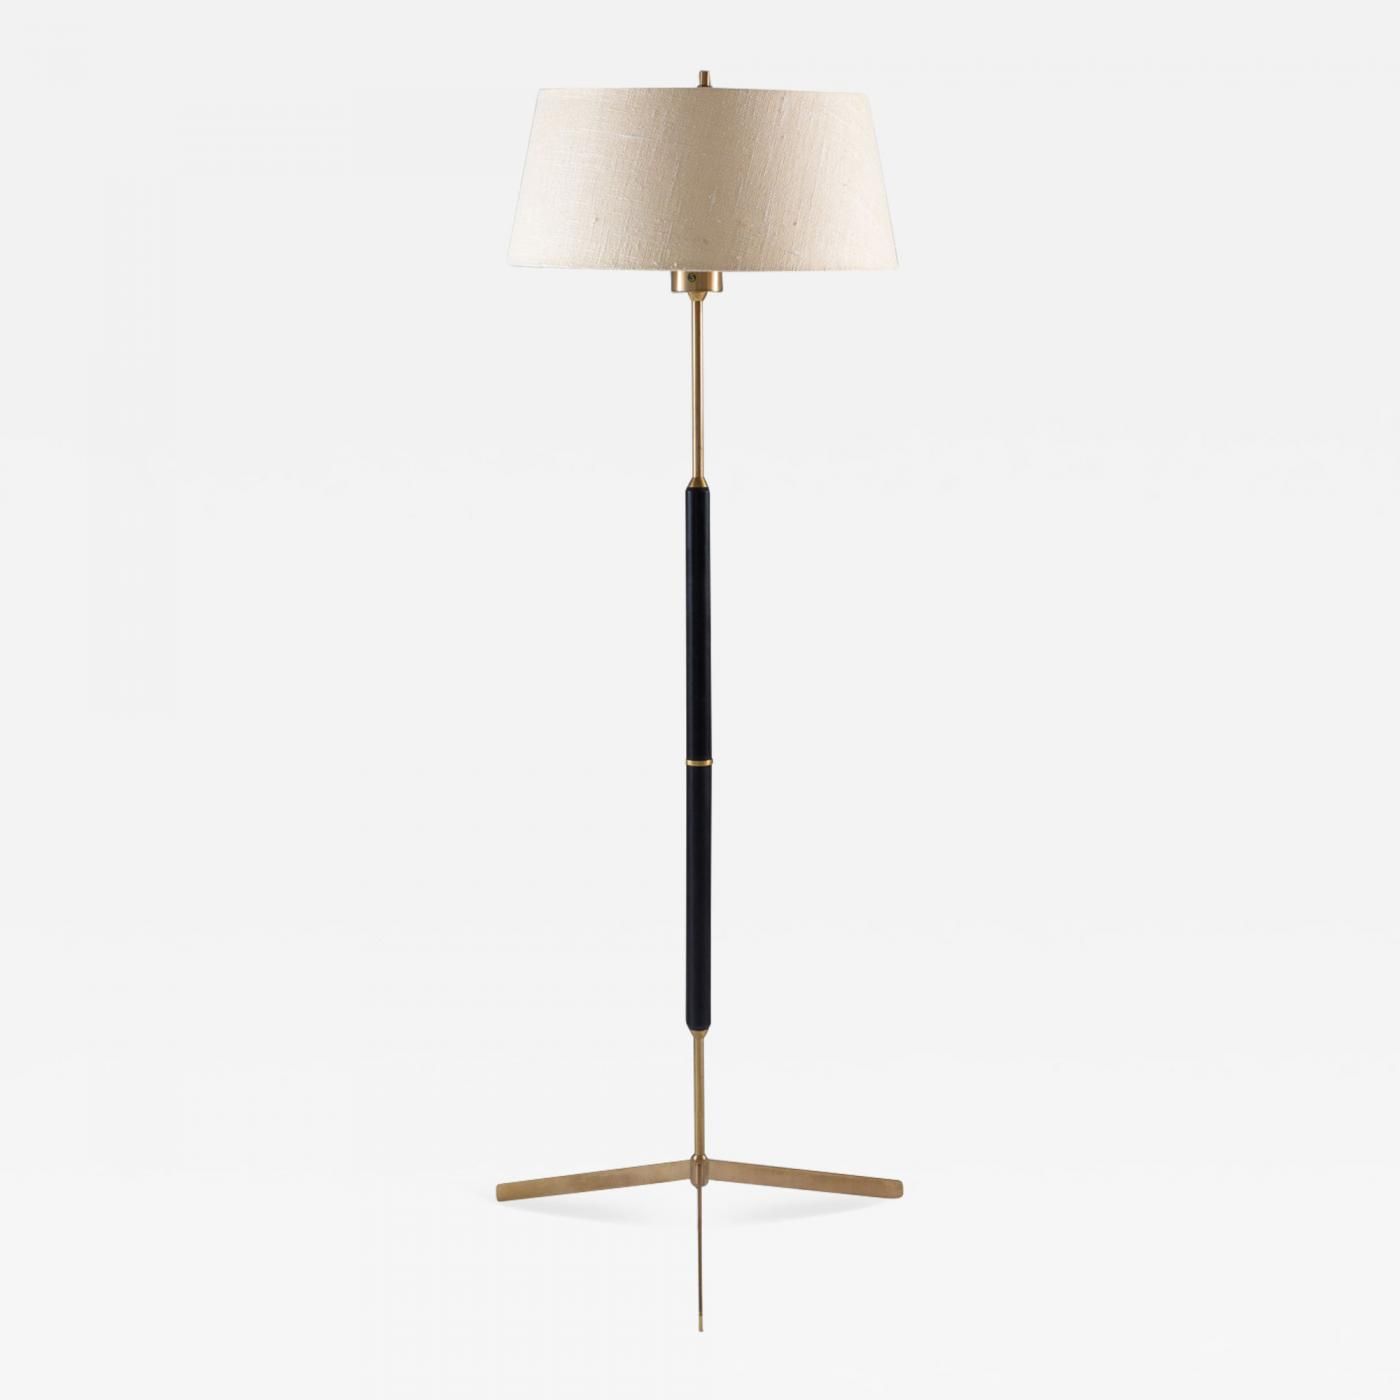 Bergboms – Scandinavian Midcentury Floor Lamp In Brass And Wood Bergboms, Sweden Inside Mid Century Floor Lamps (Photo 8 of 15)